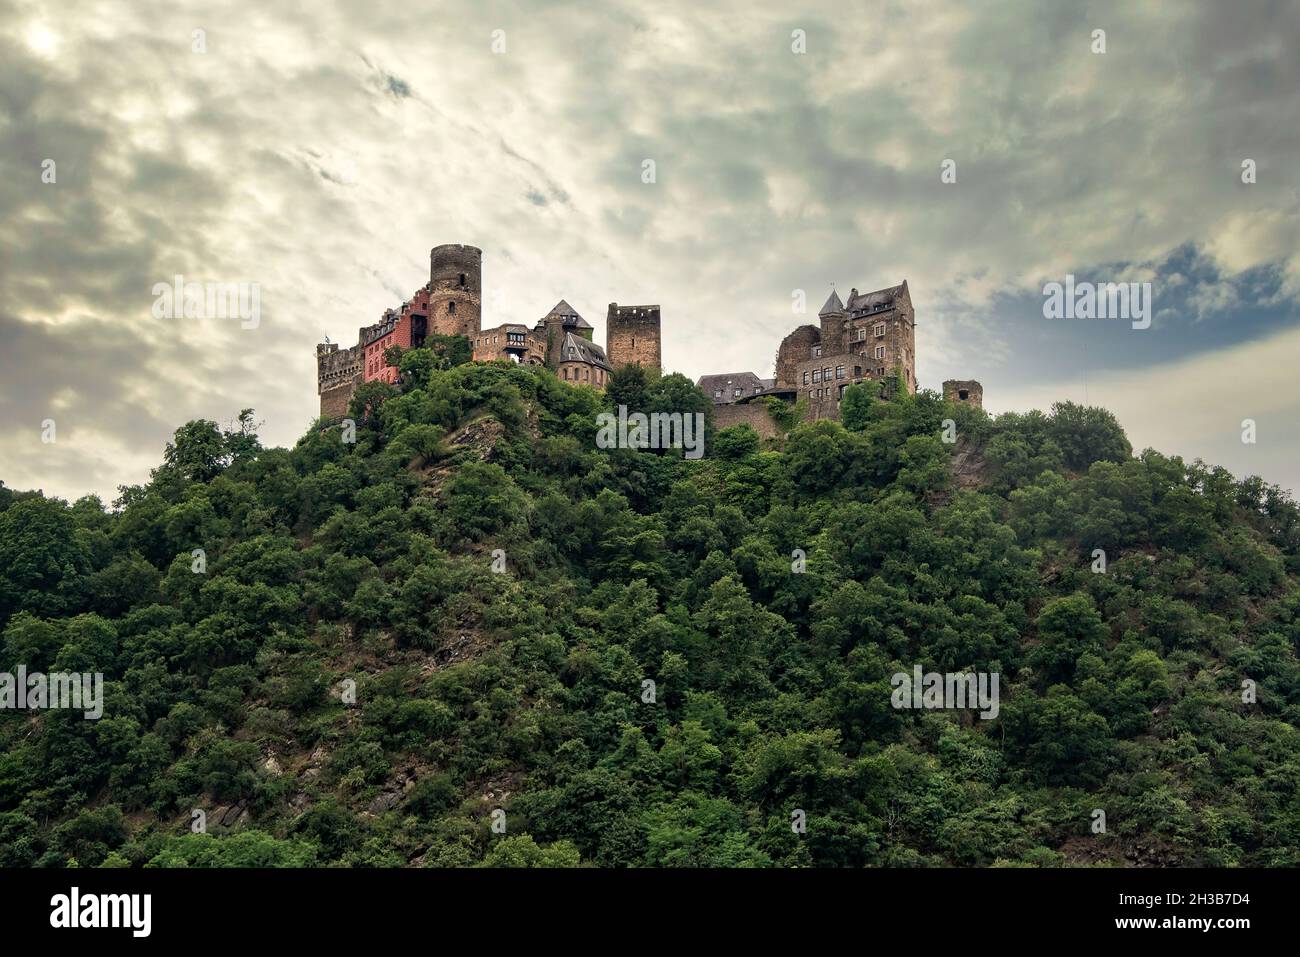 Deutschland, Rhein - 16. Juli 2017: Schloss hoch oben am Rheinufer Stockfoto